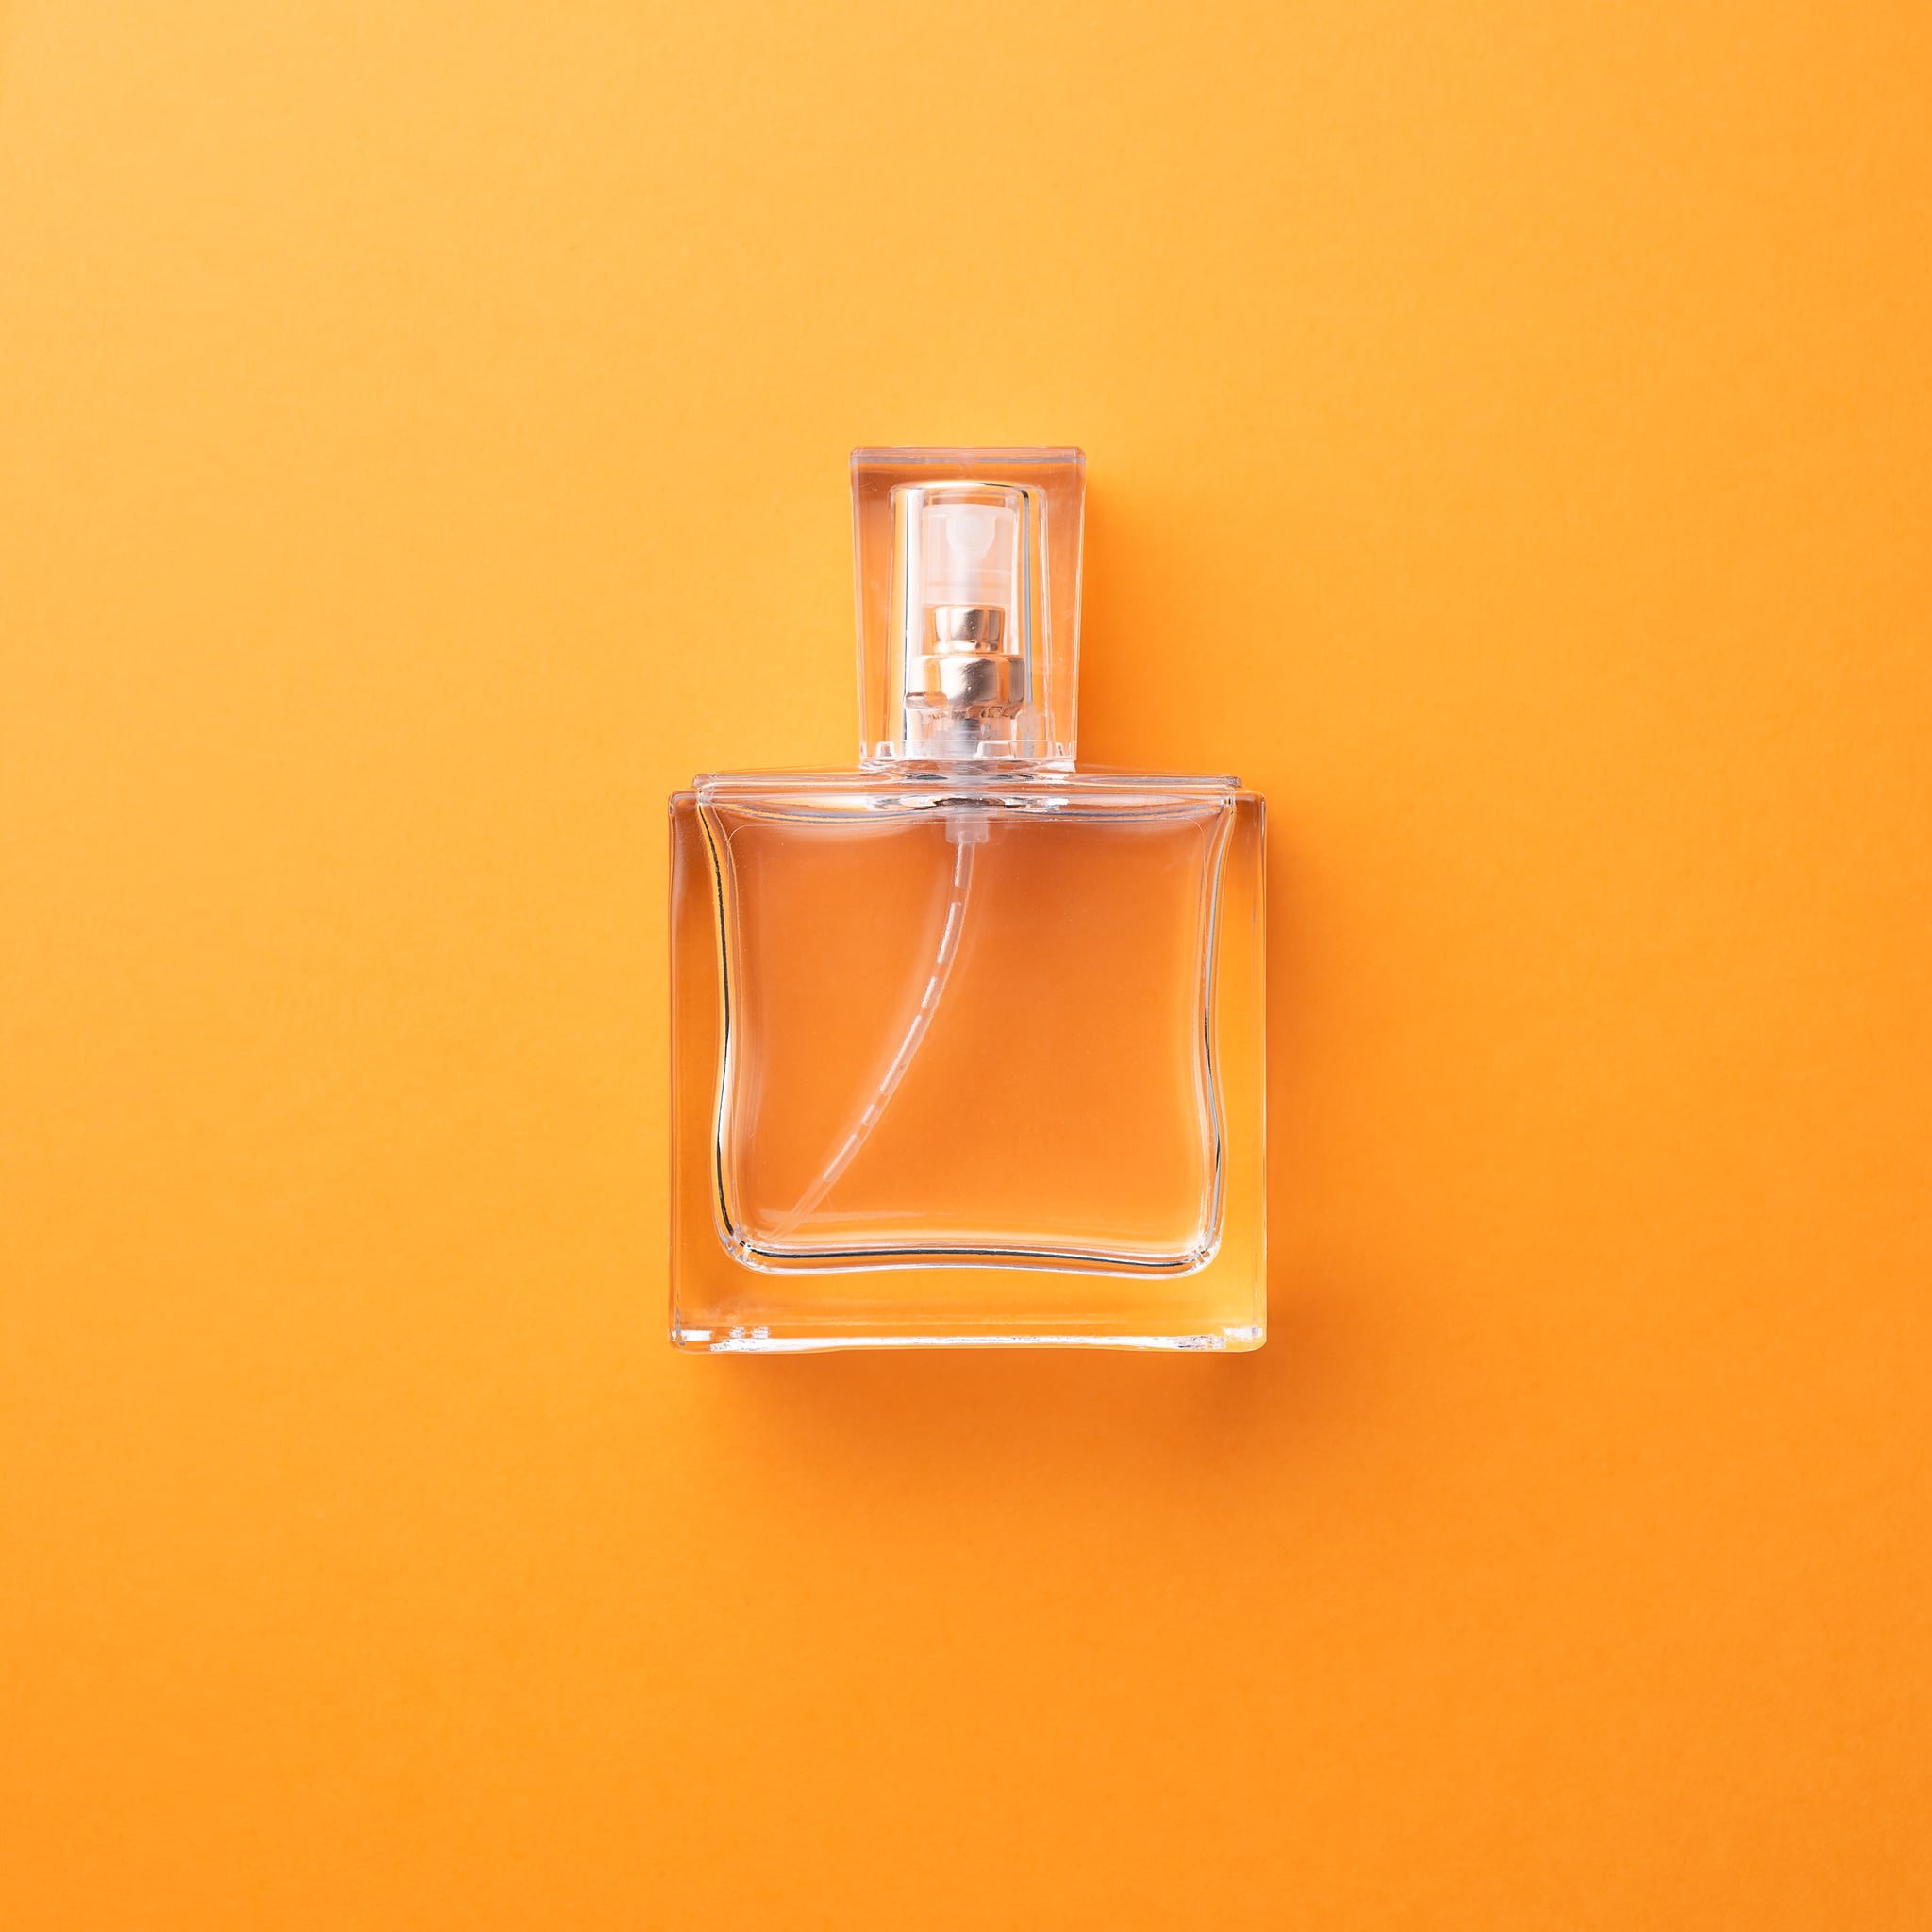 5 Awesome Orange Fragrances, Best Smelling Orange Perfumes